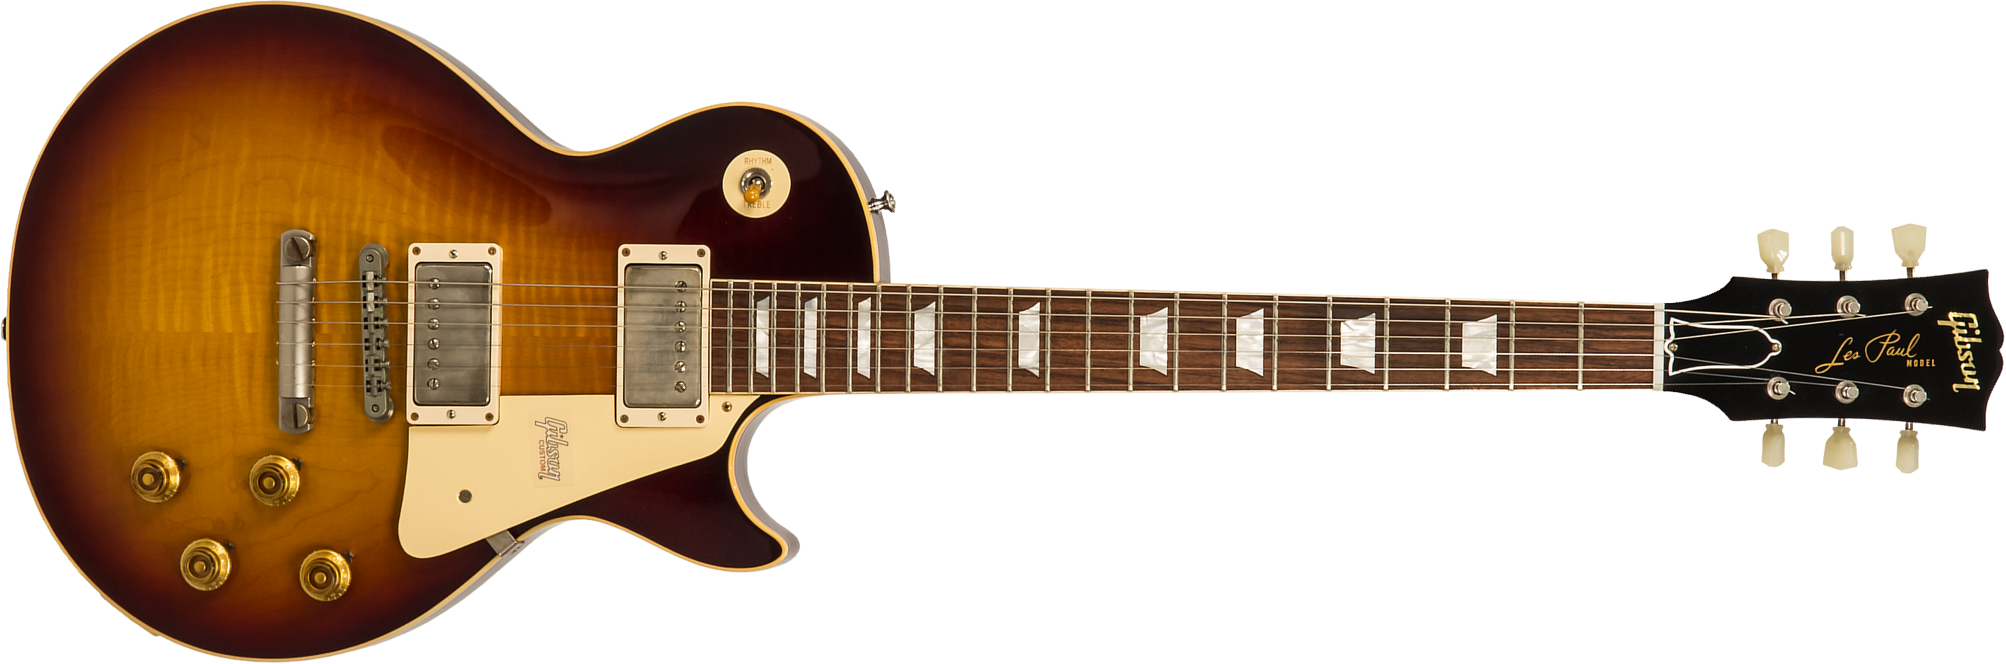 Gibson Custom Shop Les Paul Standard Burstdriver 2h Ht Rw #871301 - Vos Havana Fade - Enkel gesneden elektrische gitaar - Main picture